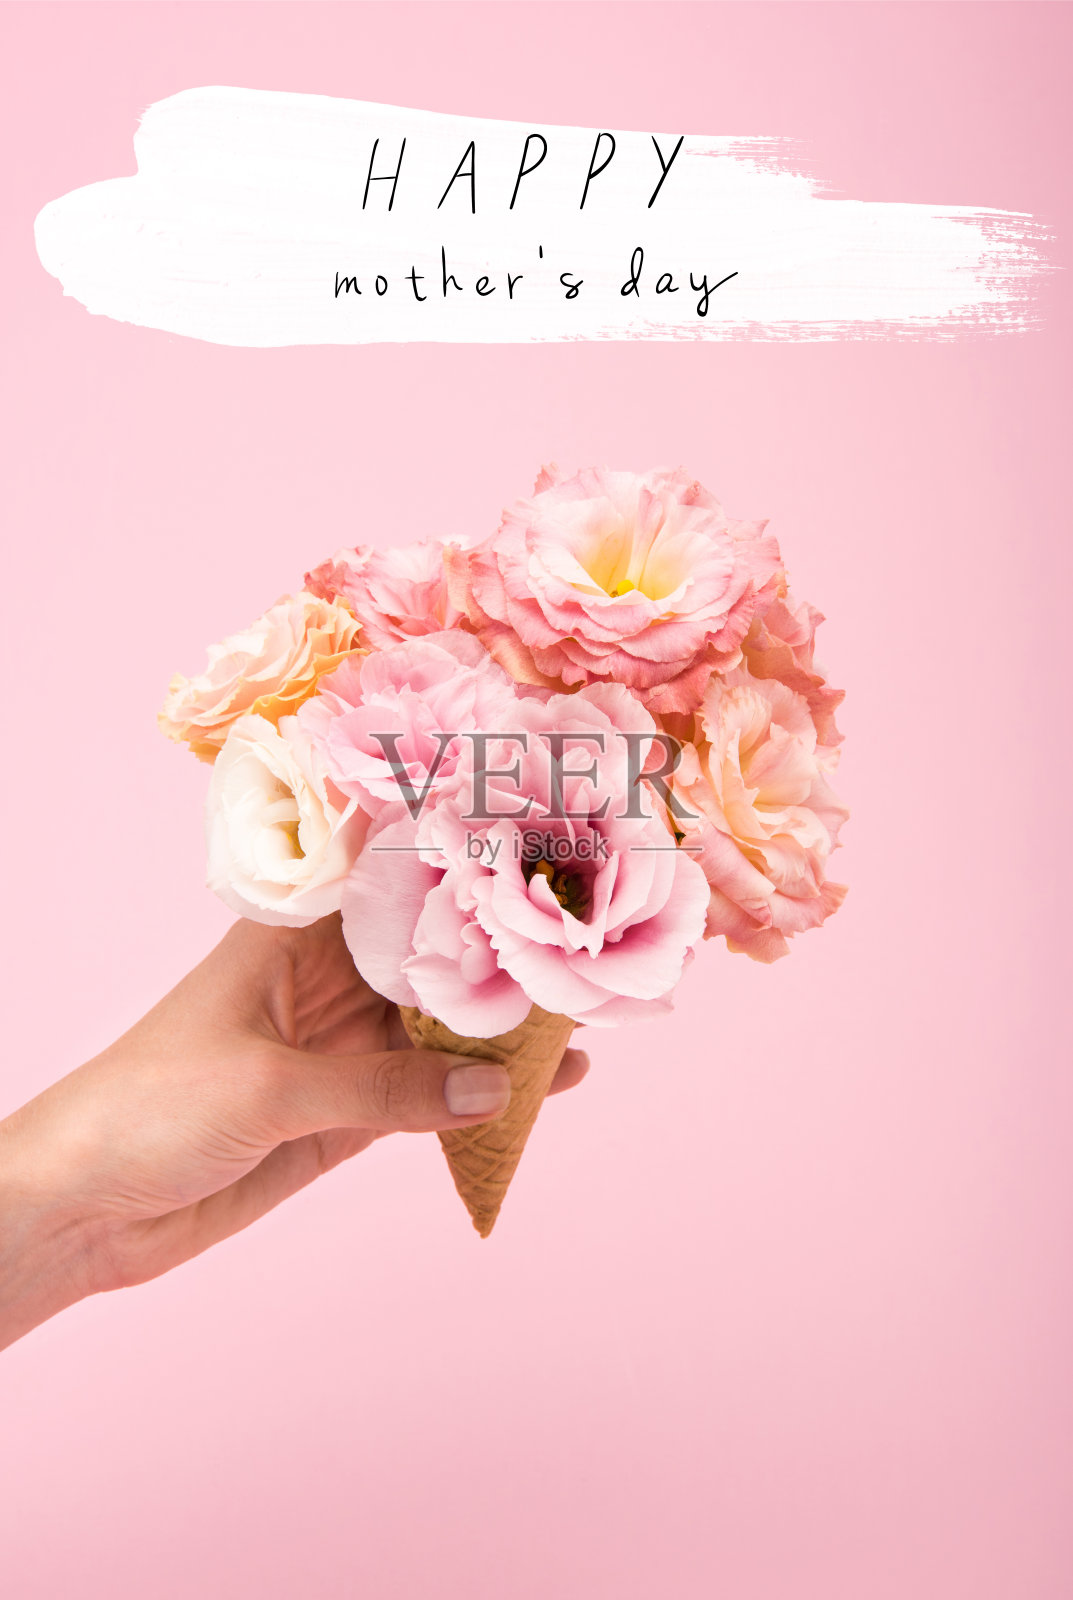 裁剪镜头的人拿华夫蛋筒与美丽的盛开的花孤立在粉红色照片摄影图片